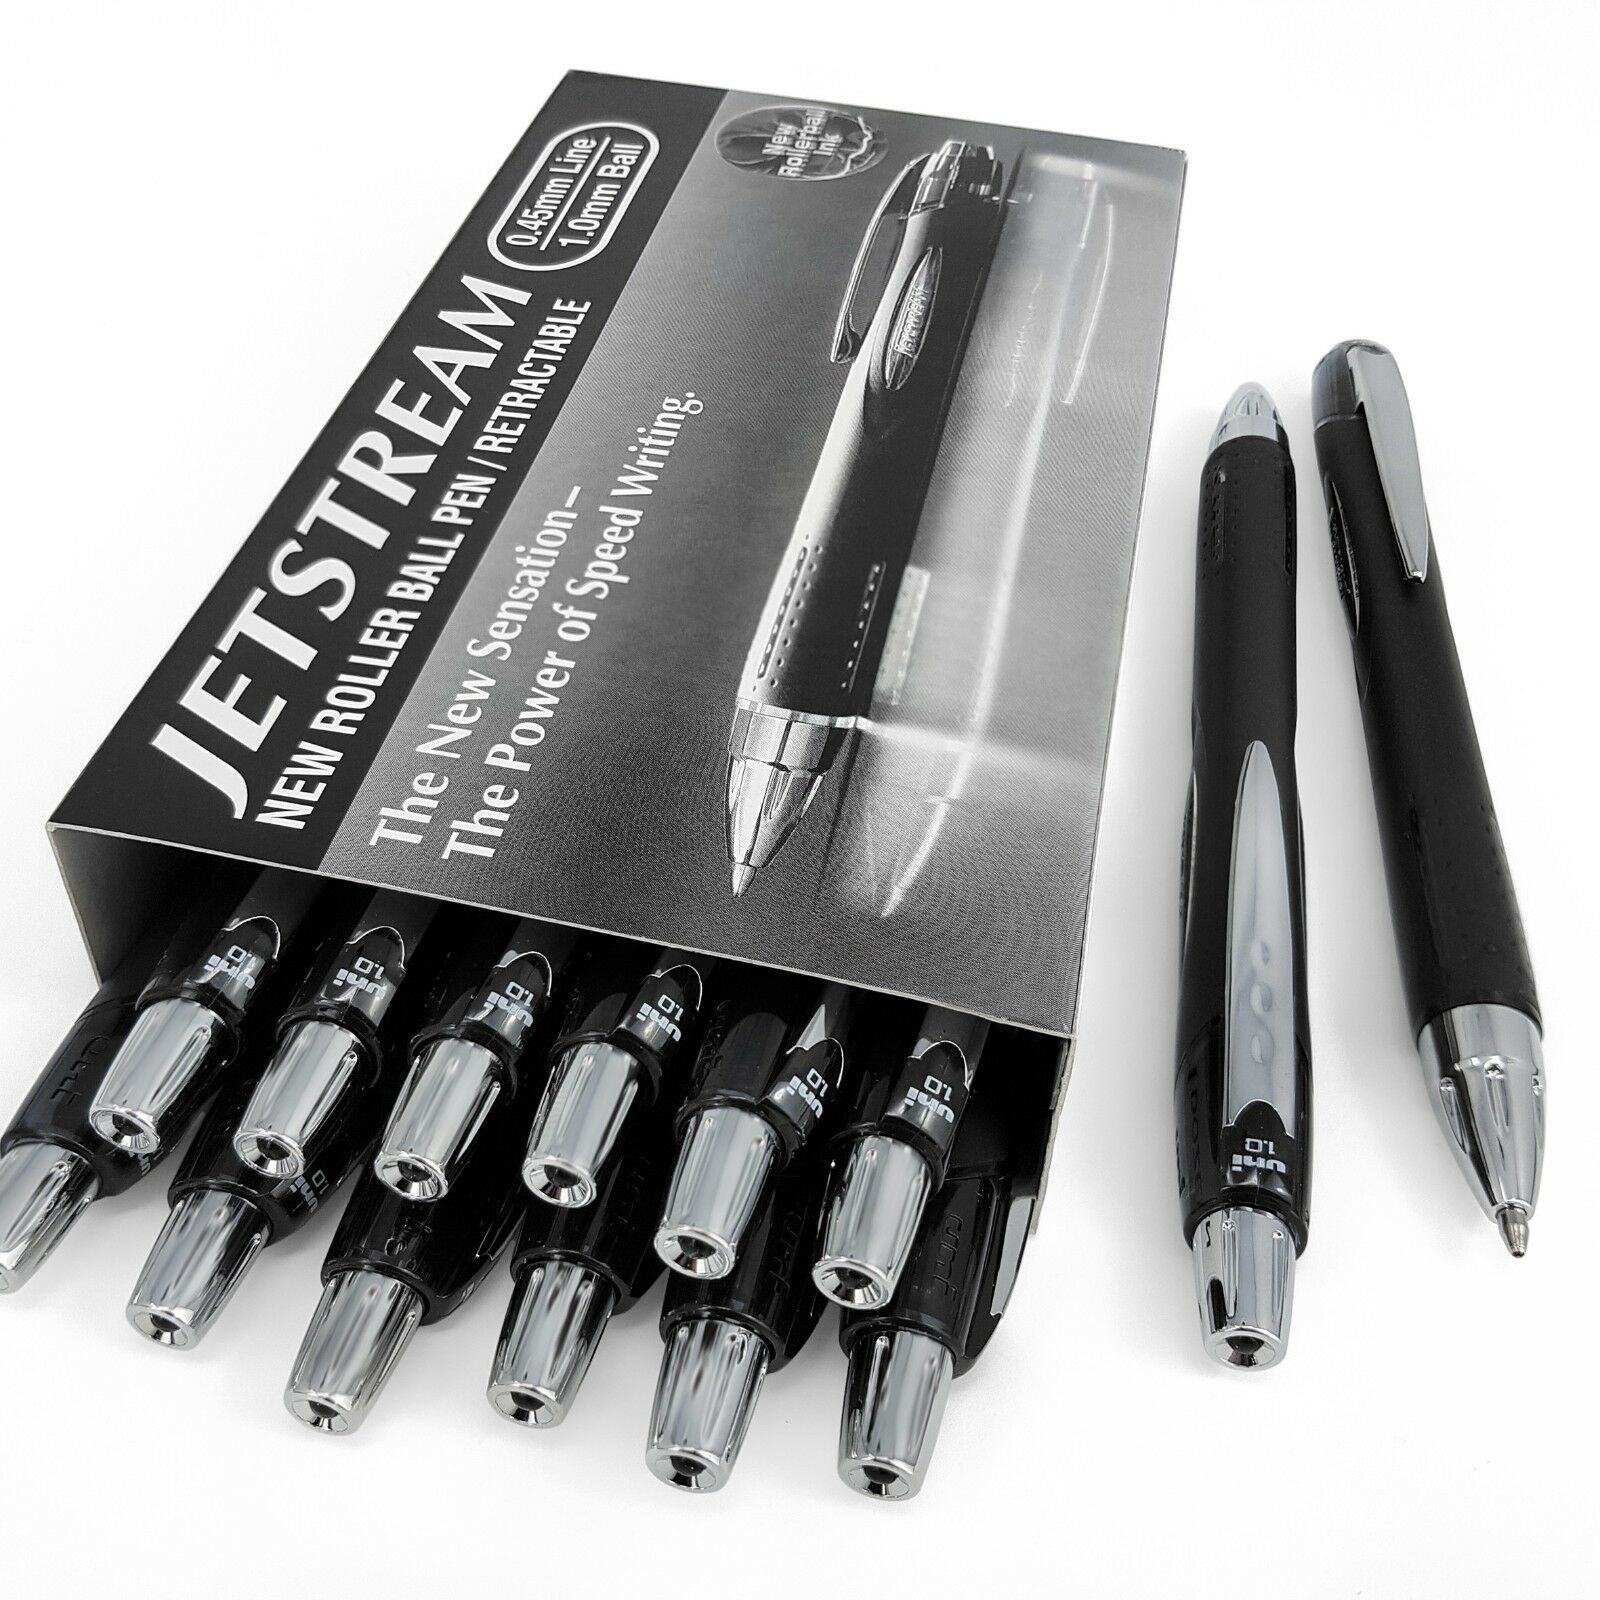 قلم حبر جاف يوني، 1 ملم، أسود، SXN 210